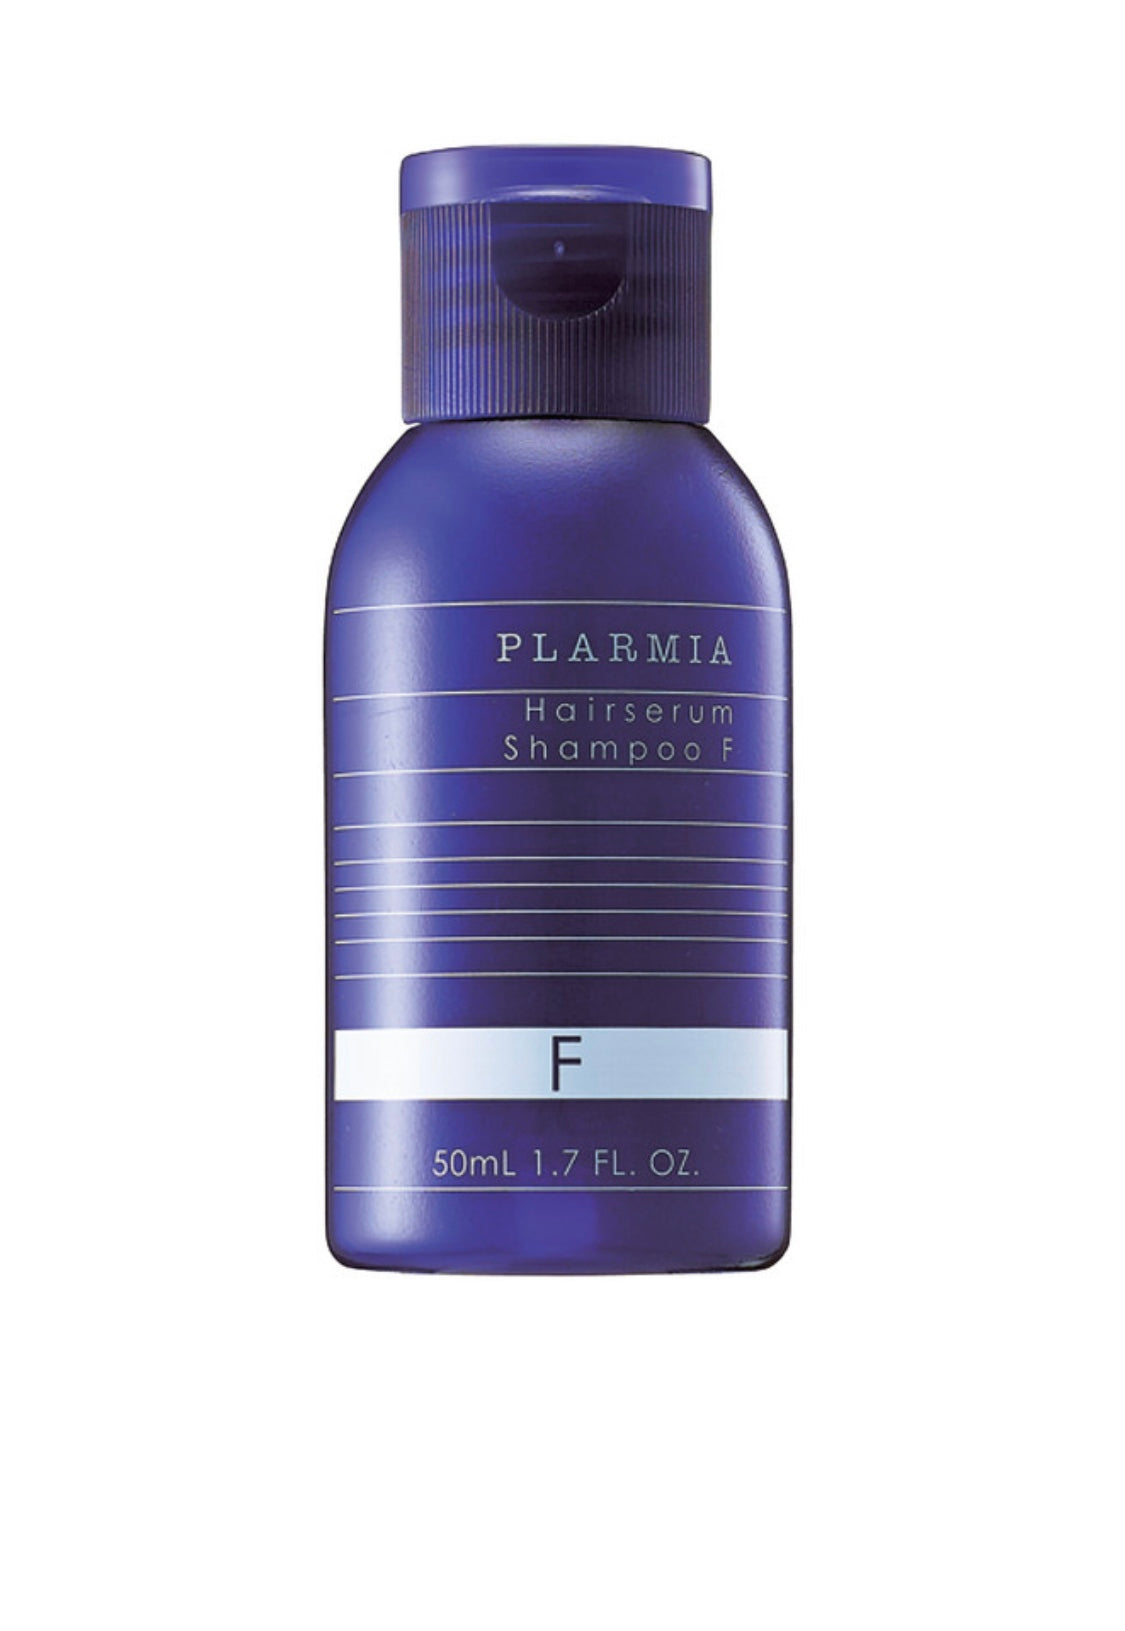 Milbon - Plarmia hairserum shampoo F 1.7 fl. oz. / 50 ml